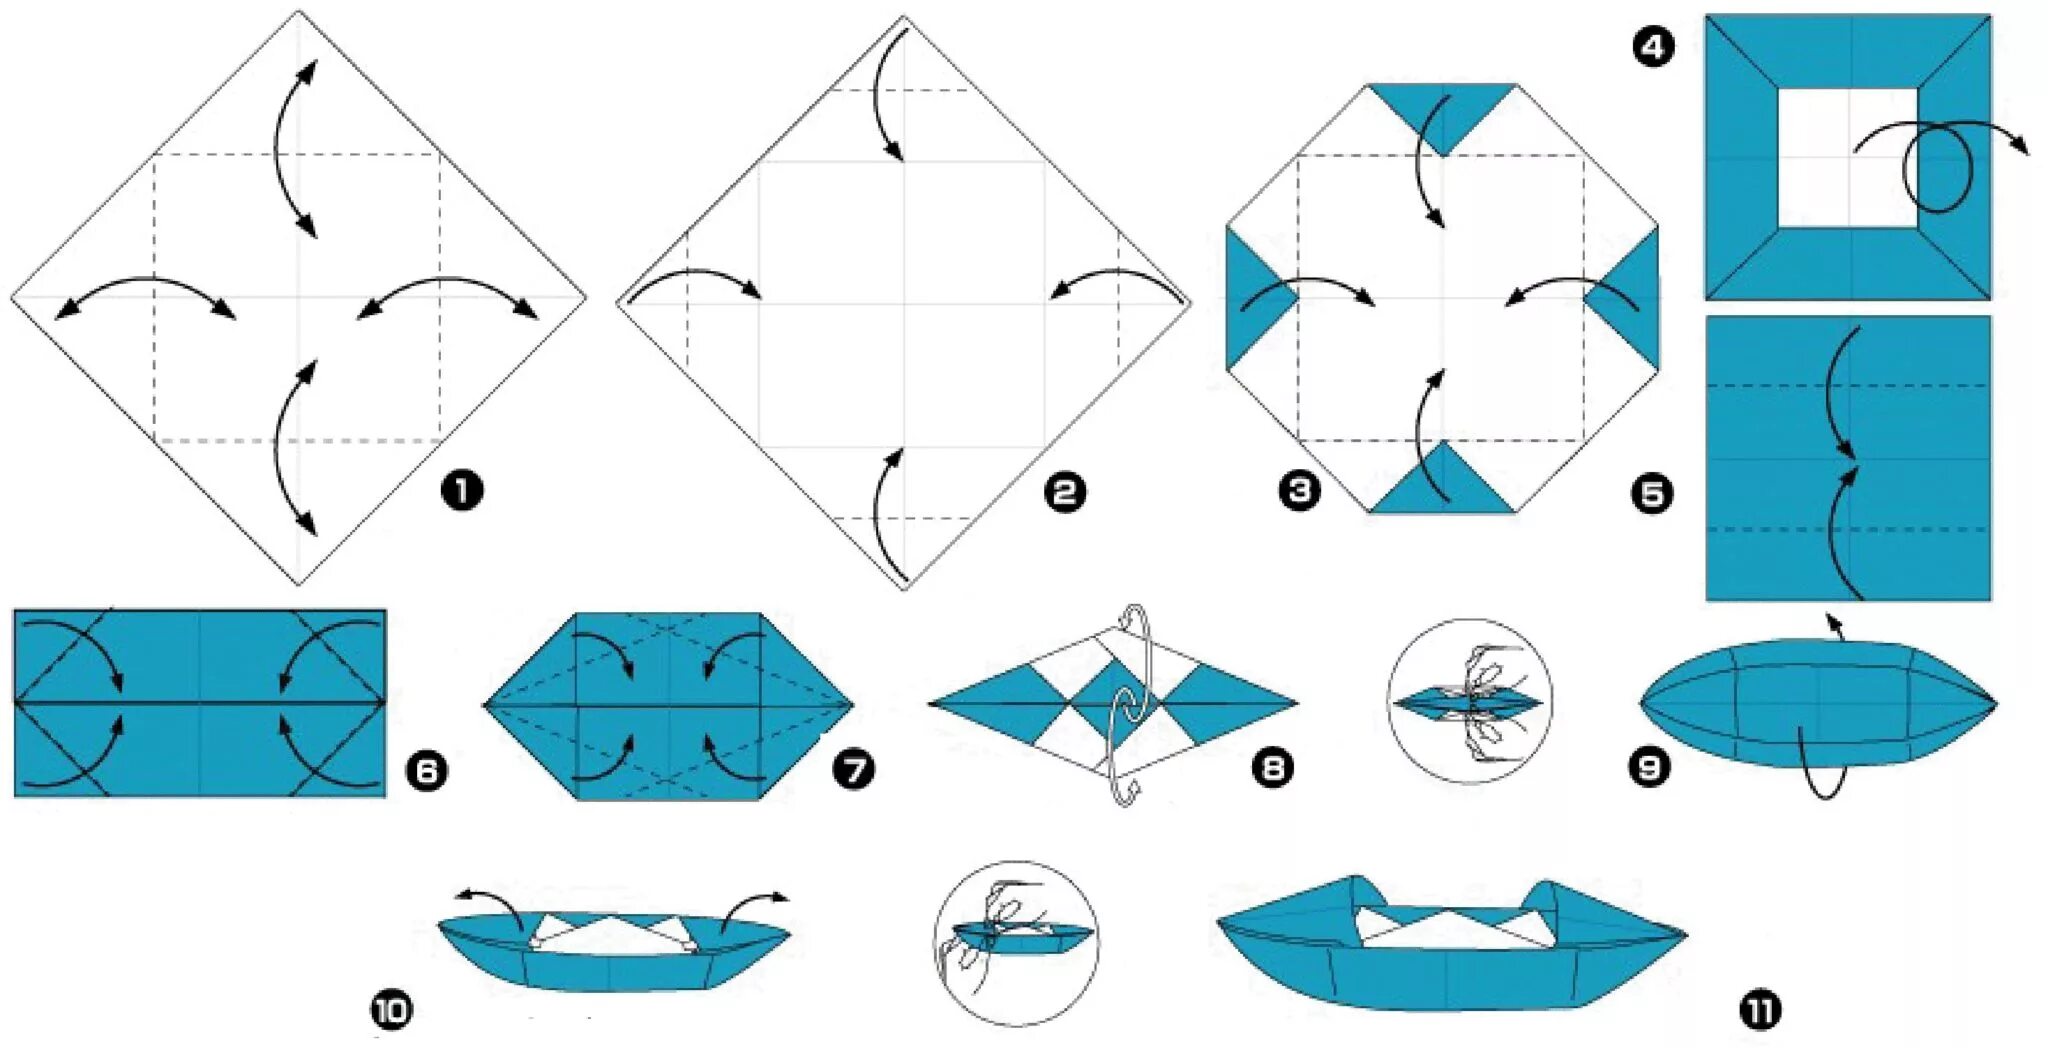 Кораблик оригами из бумаги для детей схема. Как сделать оригами кораблик из бумаги а4. Бумажный кораблик схема складывания пошагово из бумаги. Кораблик из бумаги схема а4.